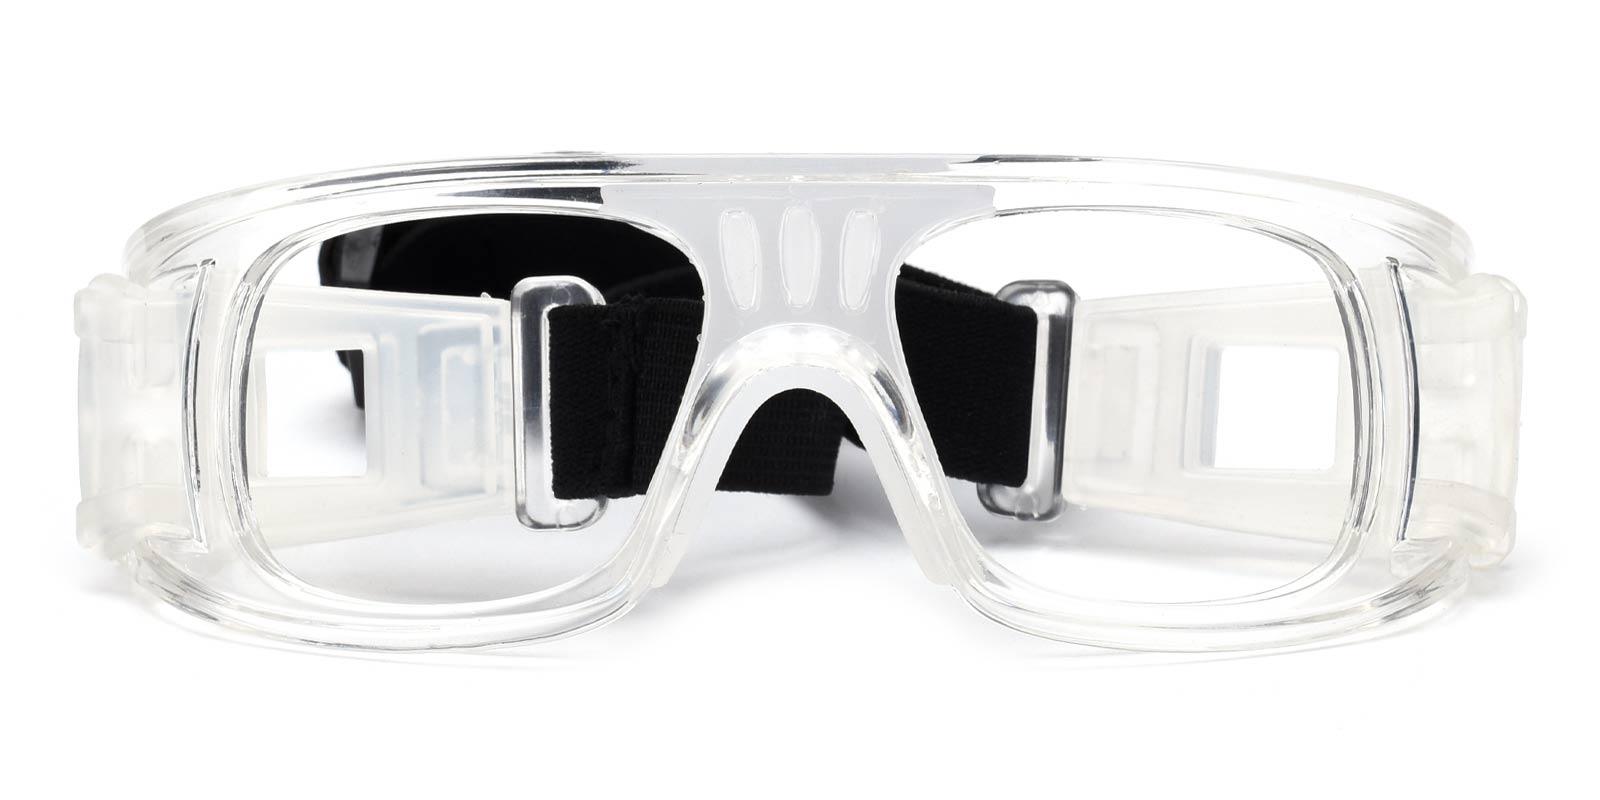 Hallettsville Translucent Plastic SportsGlasses Frames from ABBE Glasses